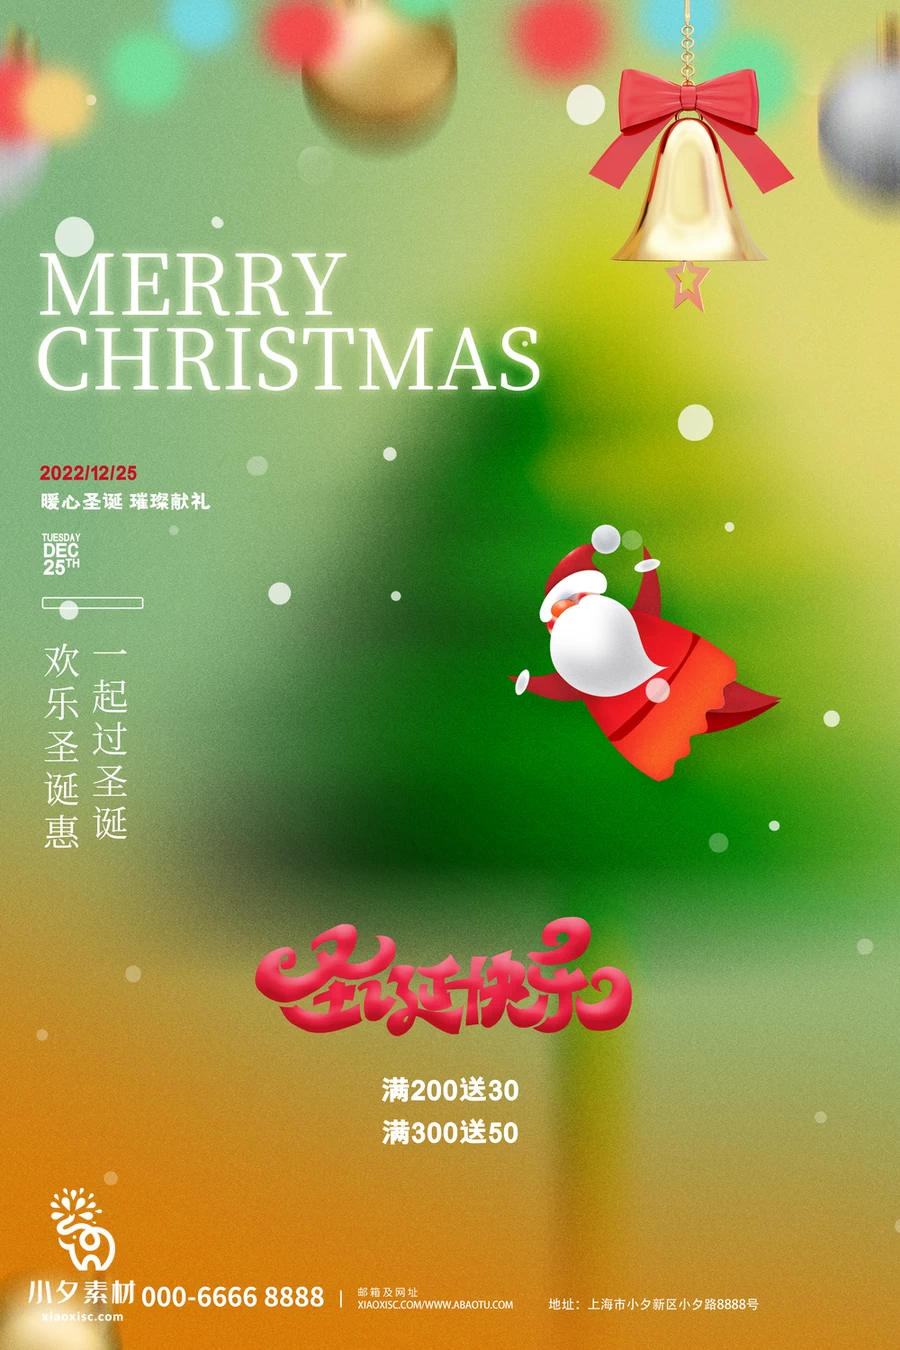 圣诞节节日节庆海报模板PSD分层设计素材【011】